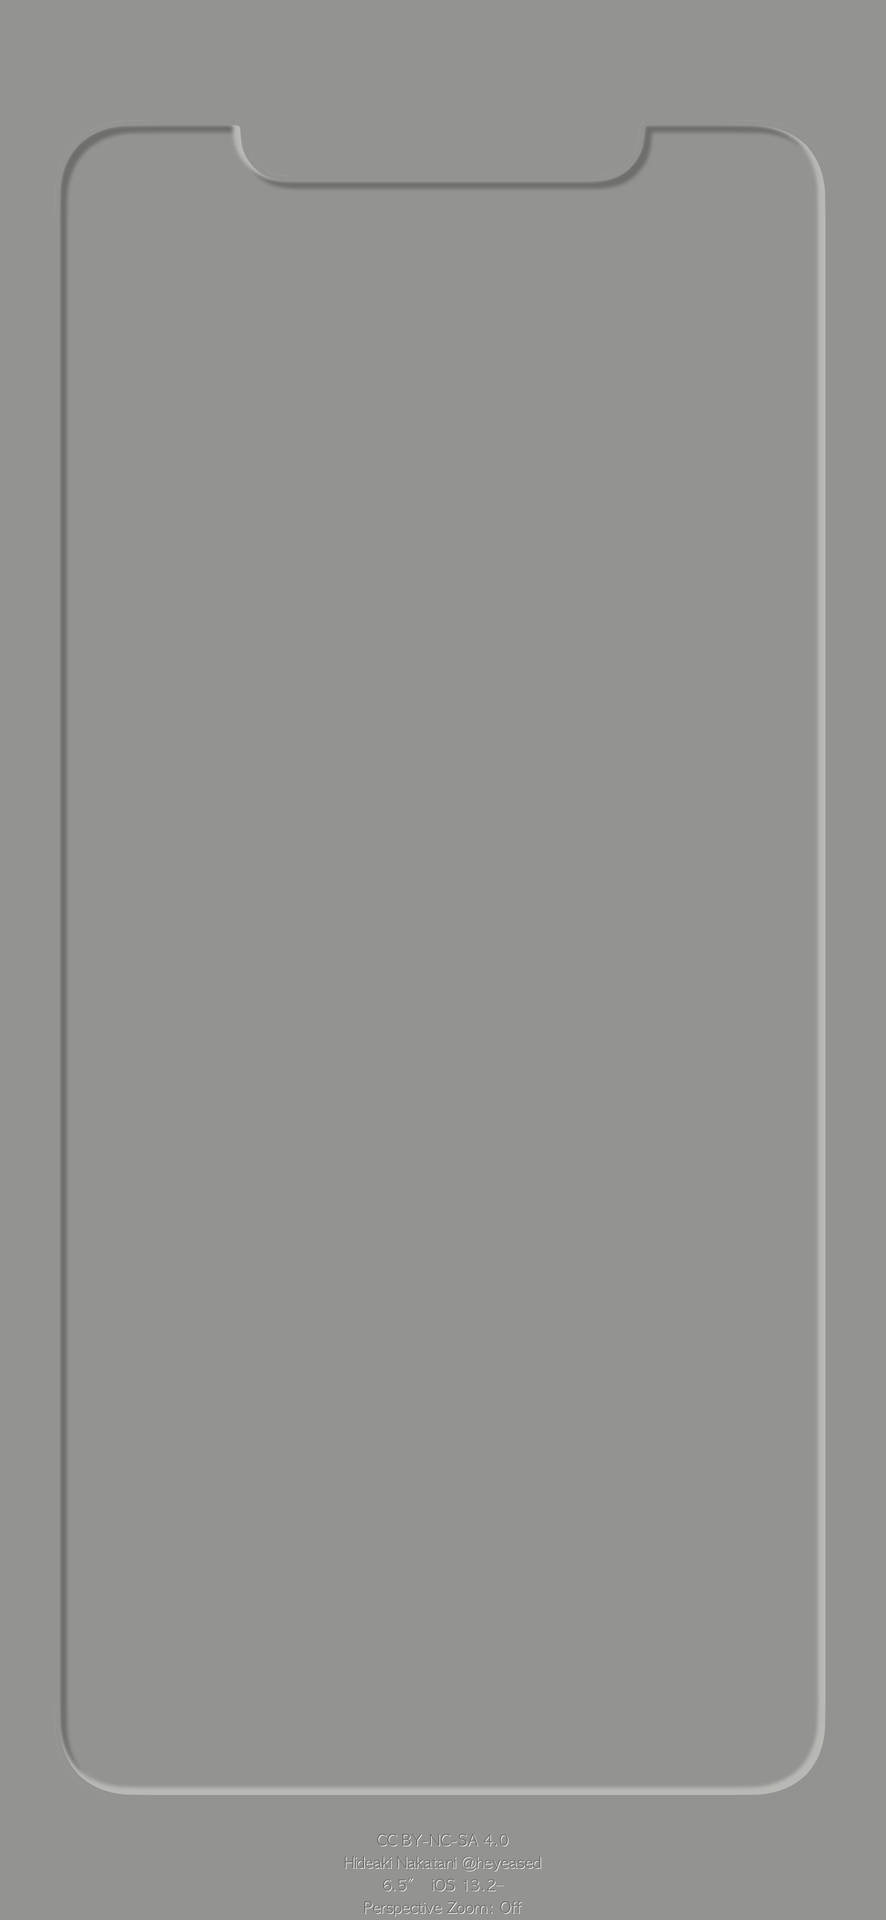 Download Outline 3d Dark Gray Display Iphone Wallpaper | Wallpapers.com